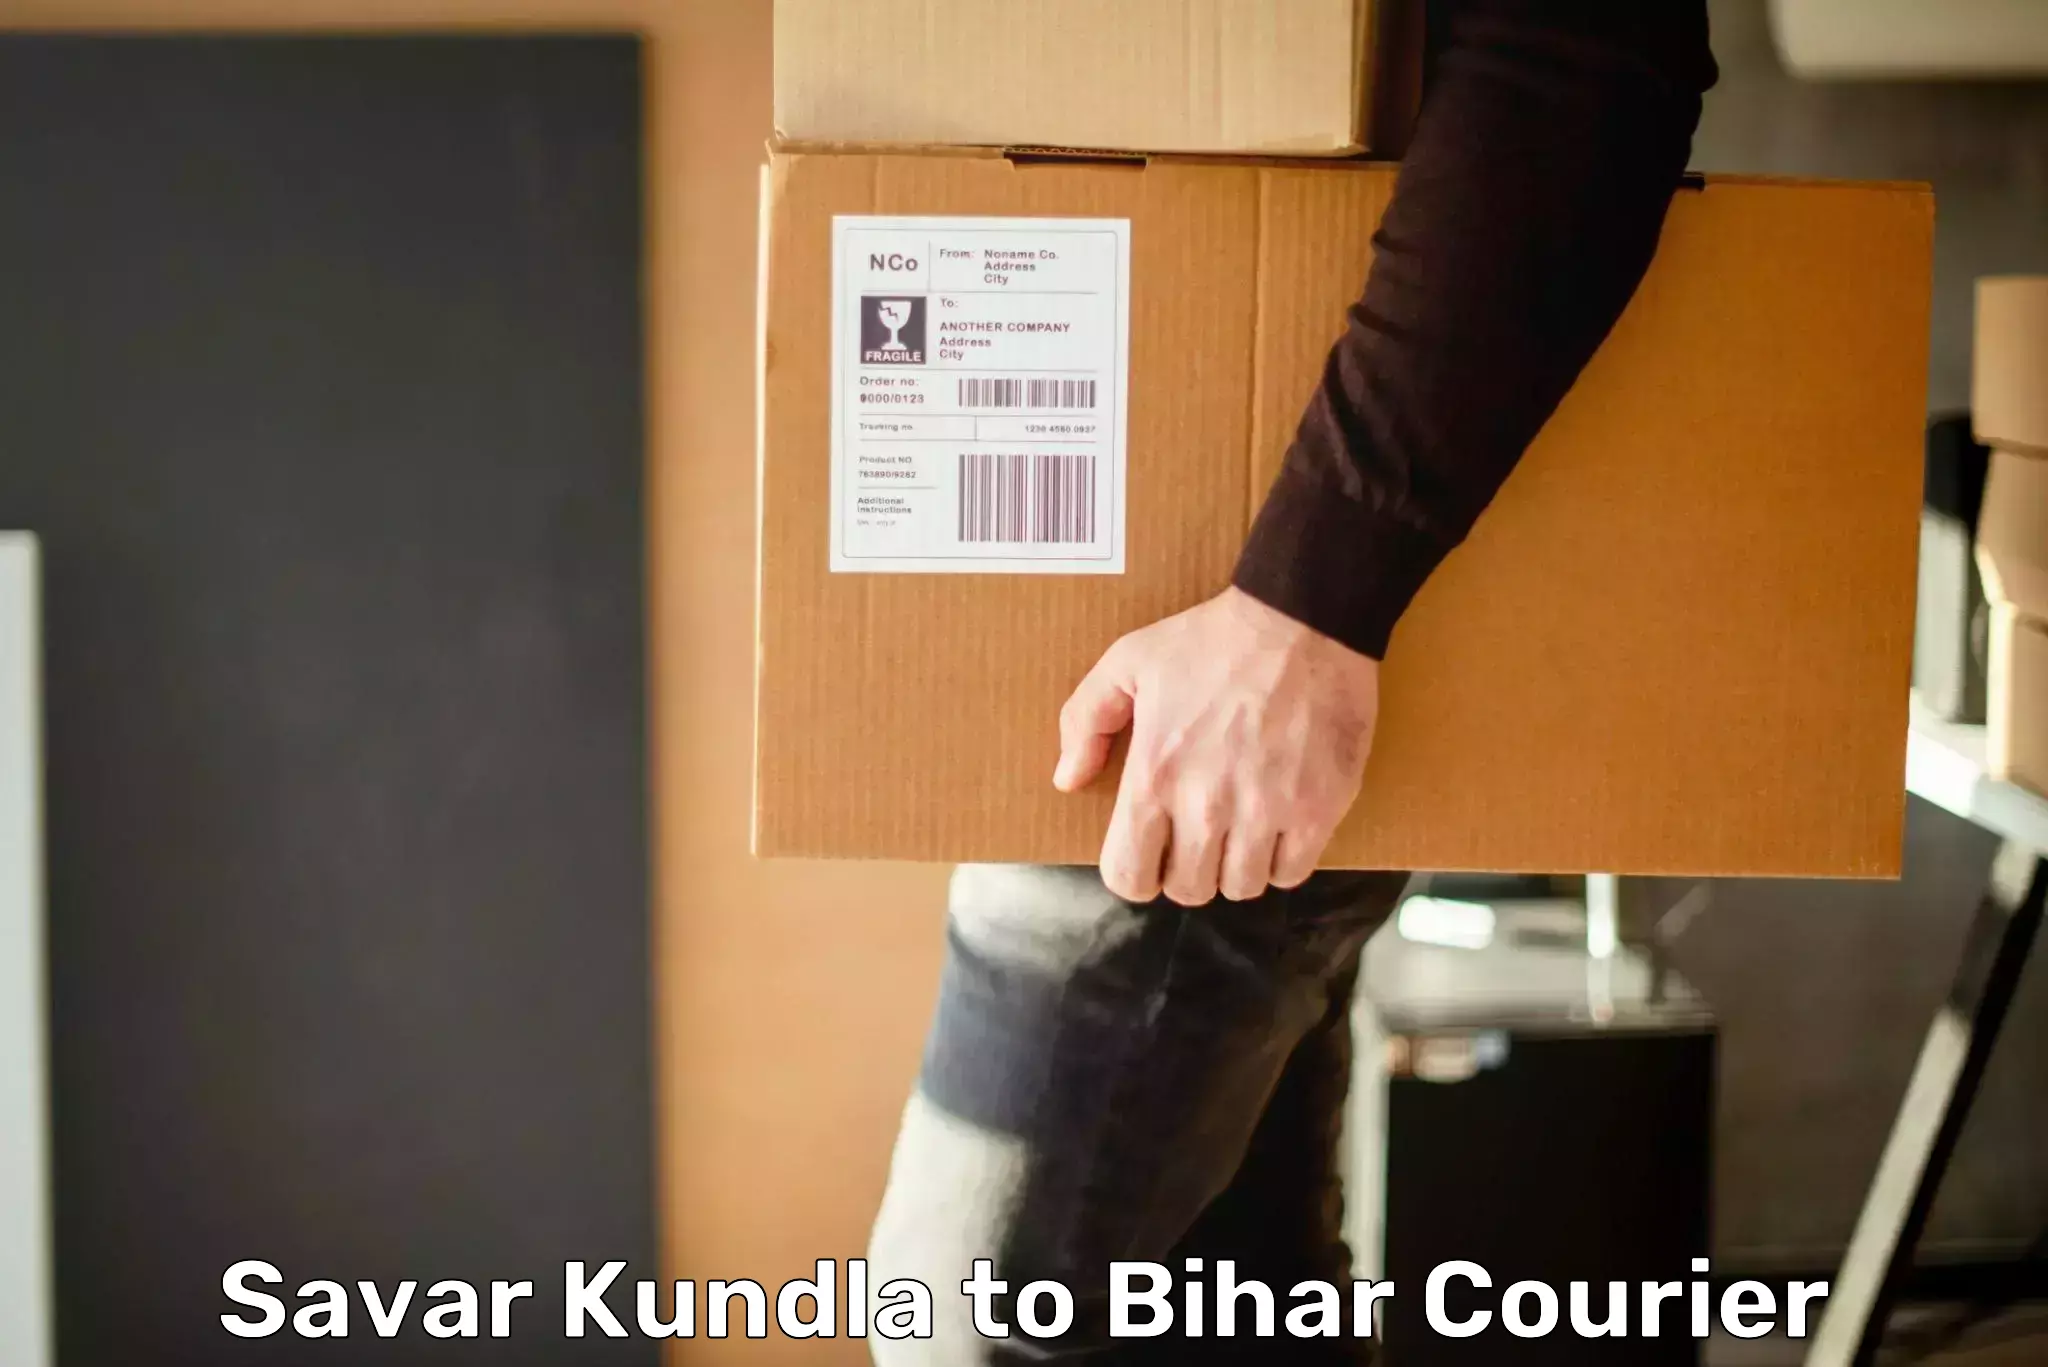 Global courier networks Savar Kundla to Barhiya